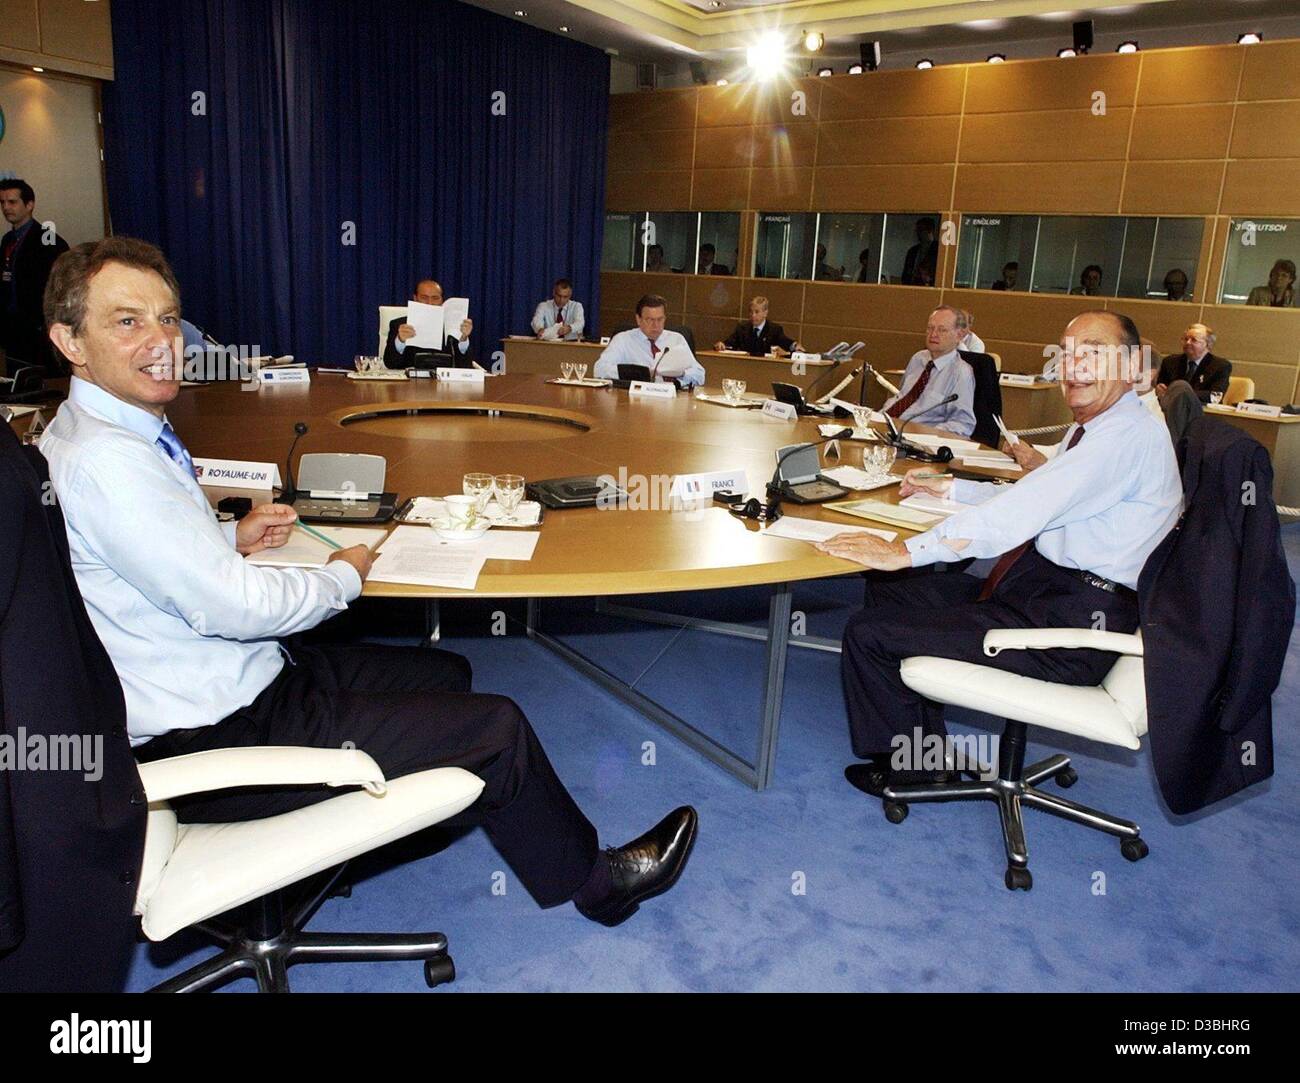 (Dpa) - britische Premierminister Tony Blair (L) und French President Jacques Chirac (R) sitzen am runden Tisch während des G8-Gipfels in Evian, Frankreich, 3. Juni 2003. Kanadischer Premier Jean Chrétien (hinten, R), Bundeskanzler Gerhard Schroeder (hinten, 2. von R), übrigens sind auch am runden Tisch sitzen Stockfoto